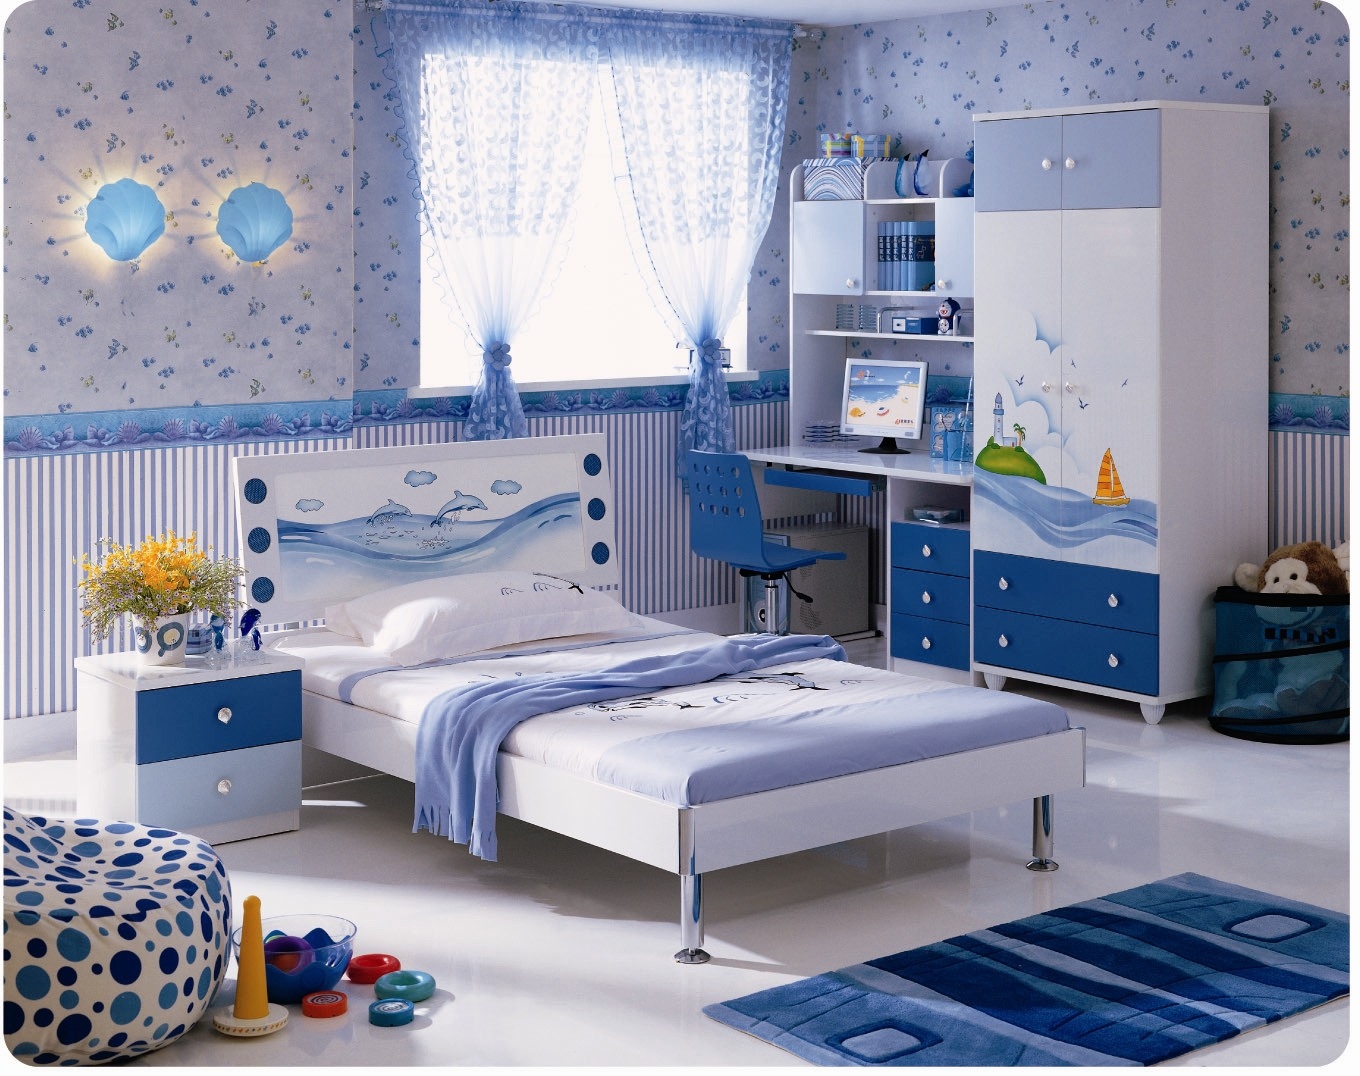 Атмосфера уюта и комфорта: Дизайн детской комнаты